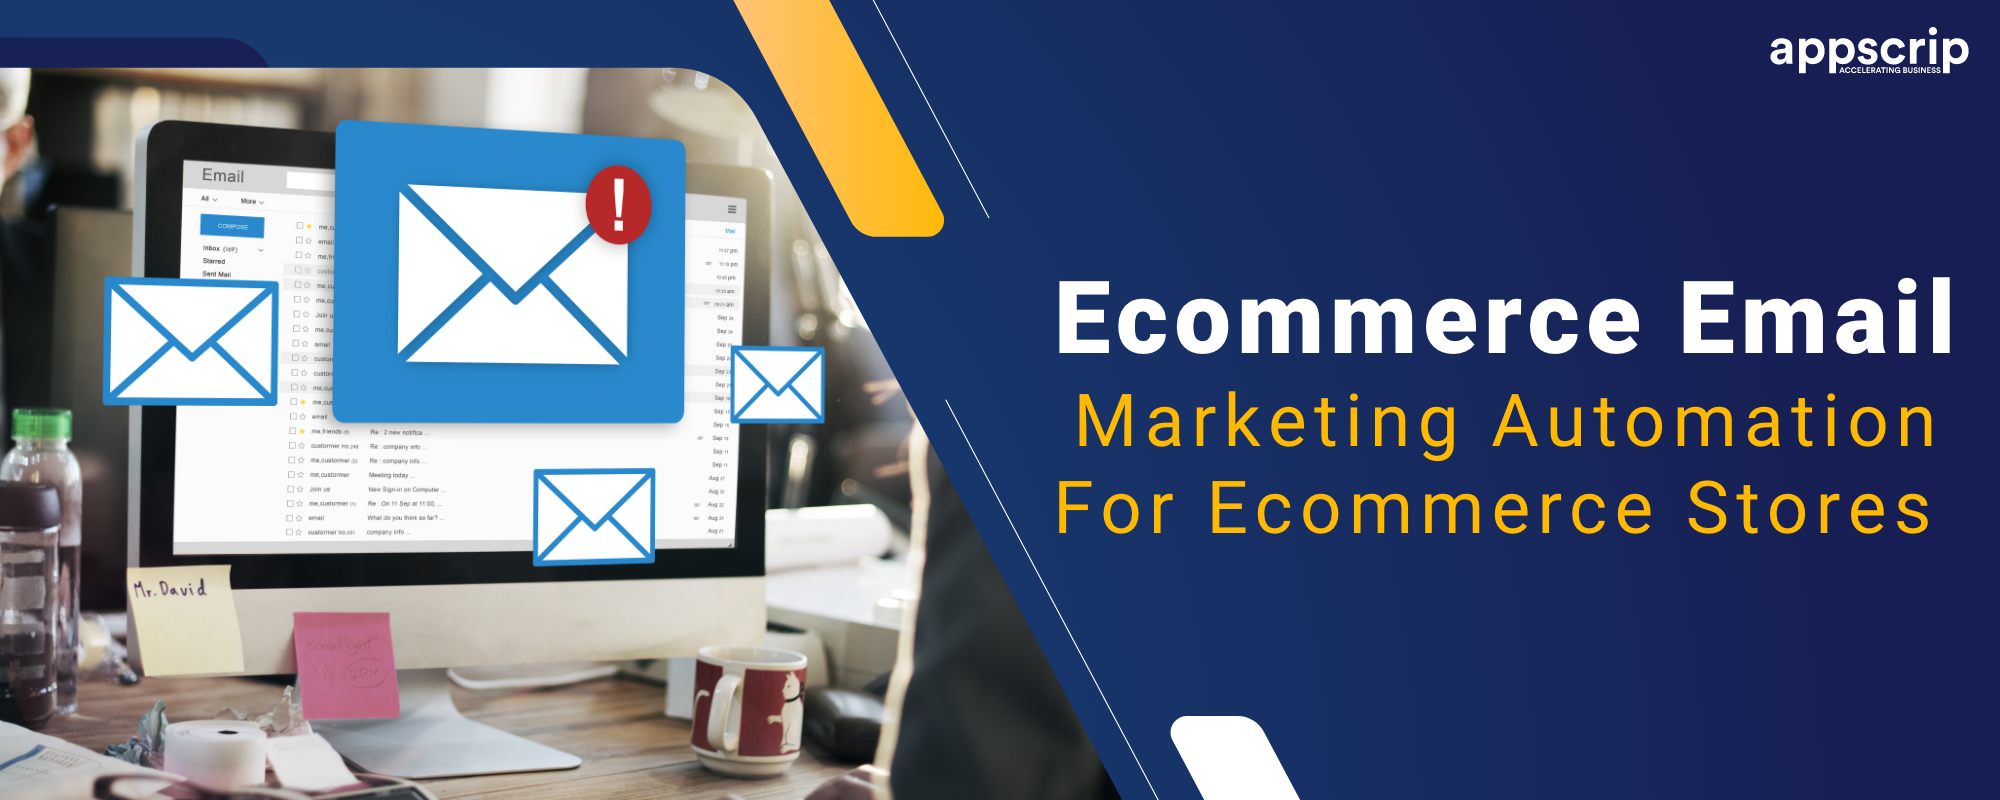 Ecommerce email marketing automation